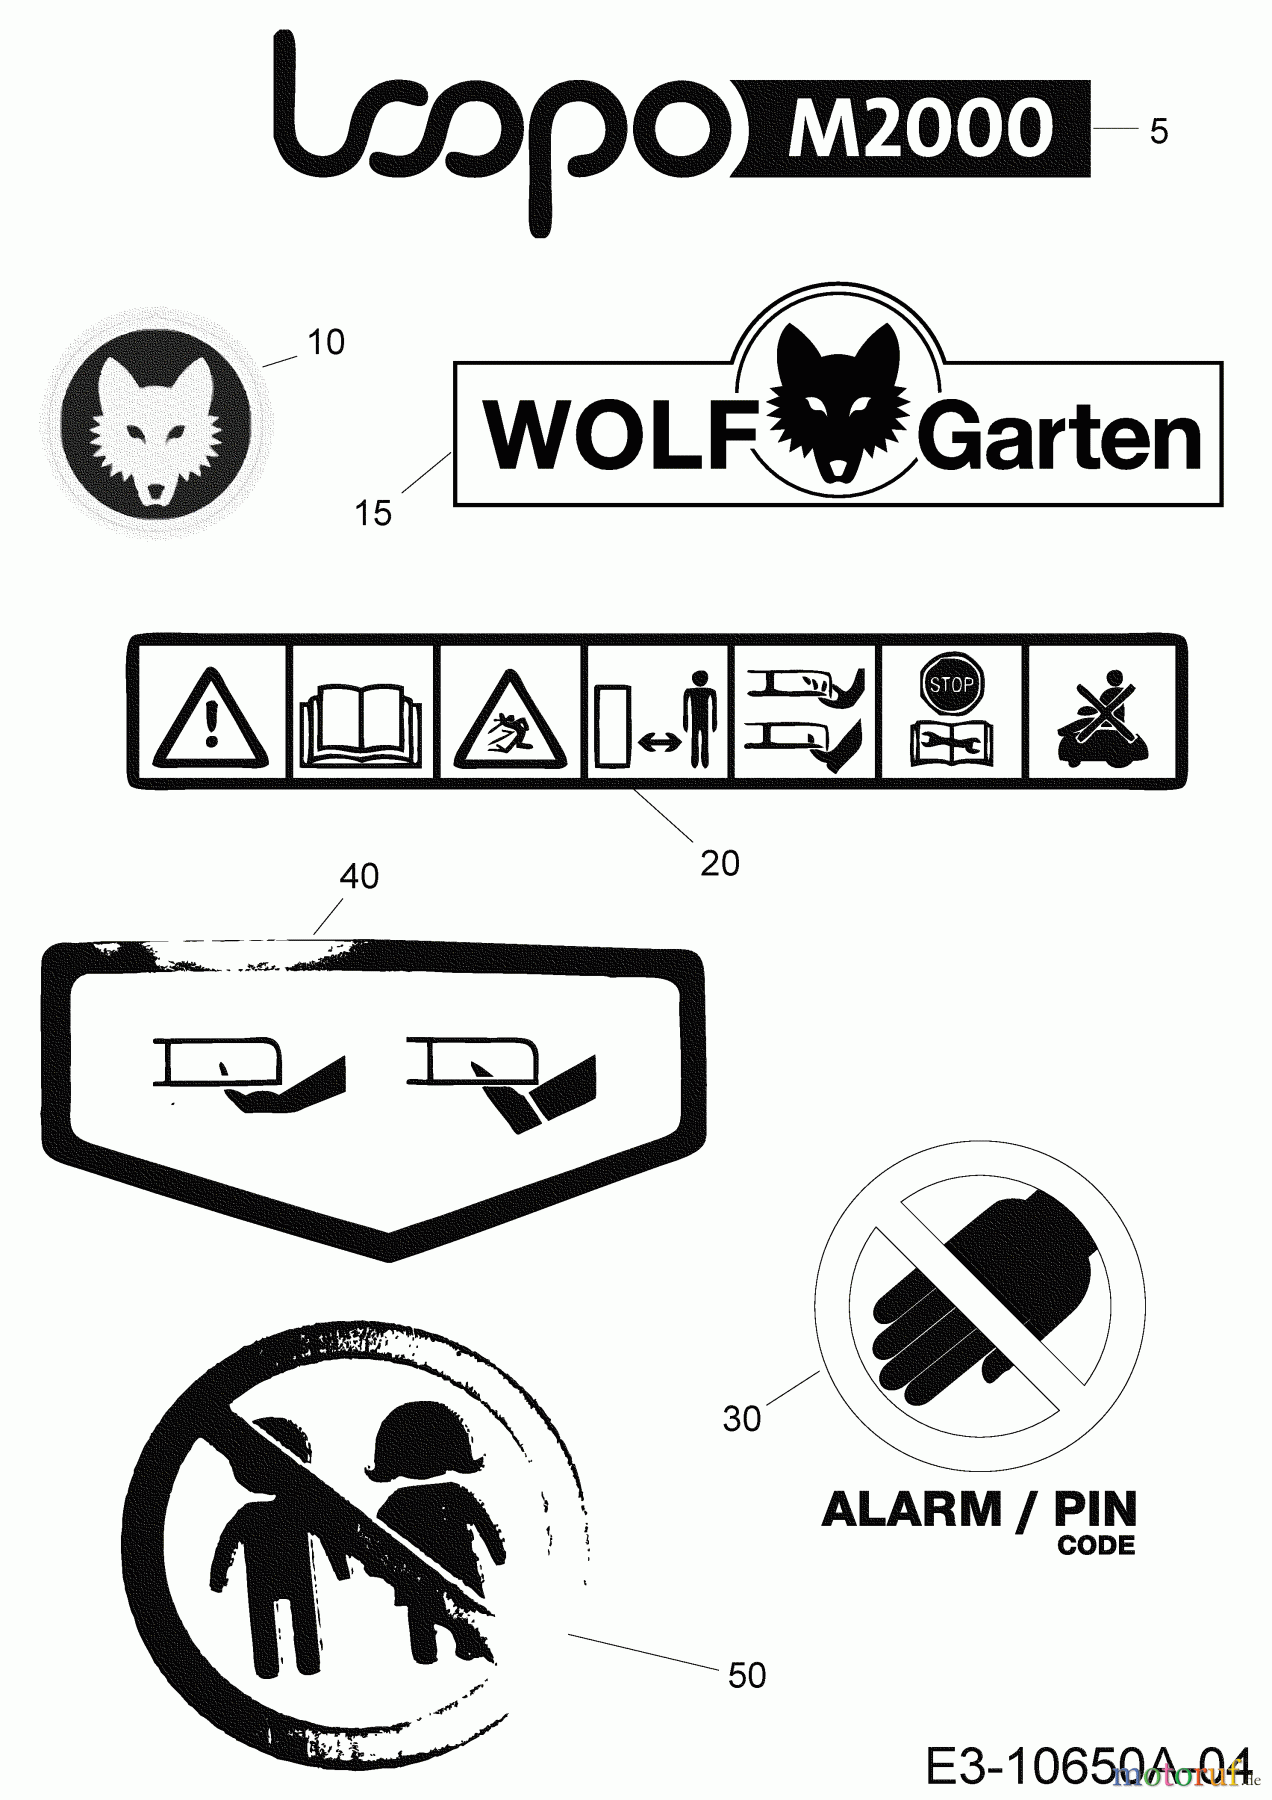  Wolf-Garten Mähroboter Loopo M2000 22BCFAEA650 (2020) Aufkleber